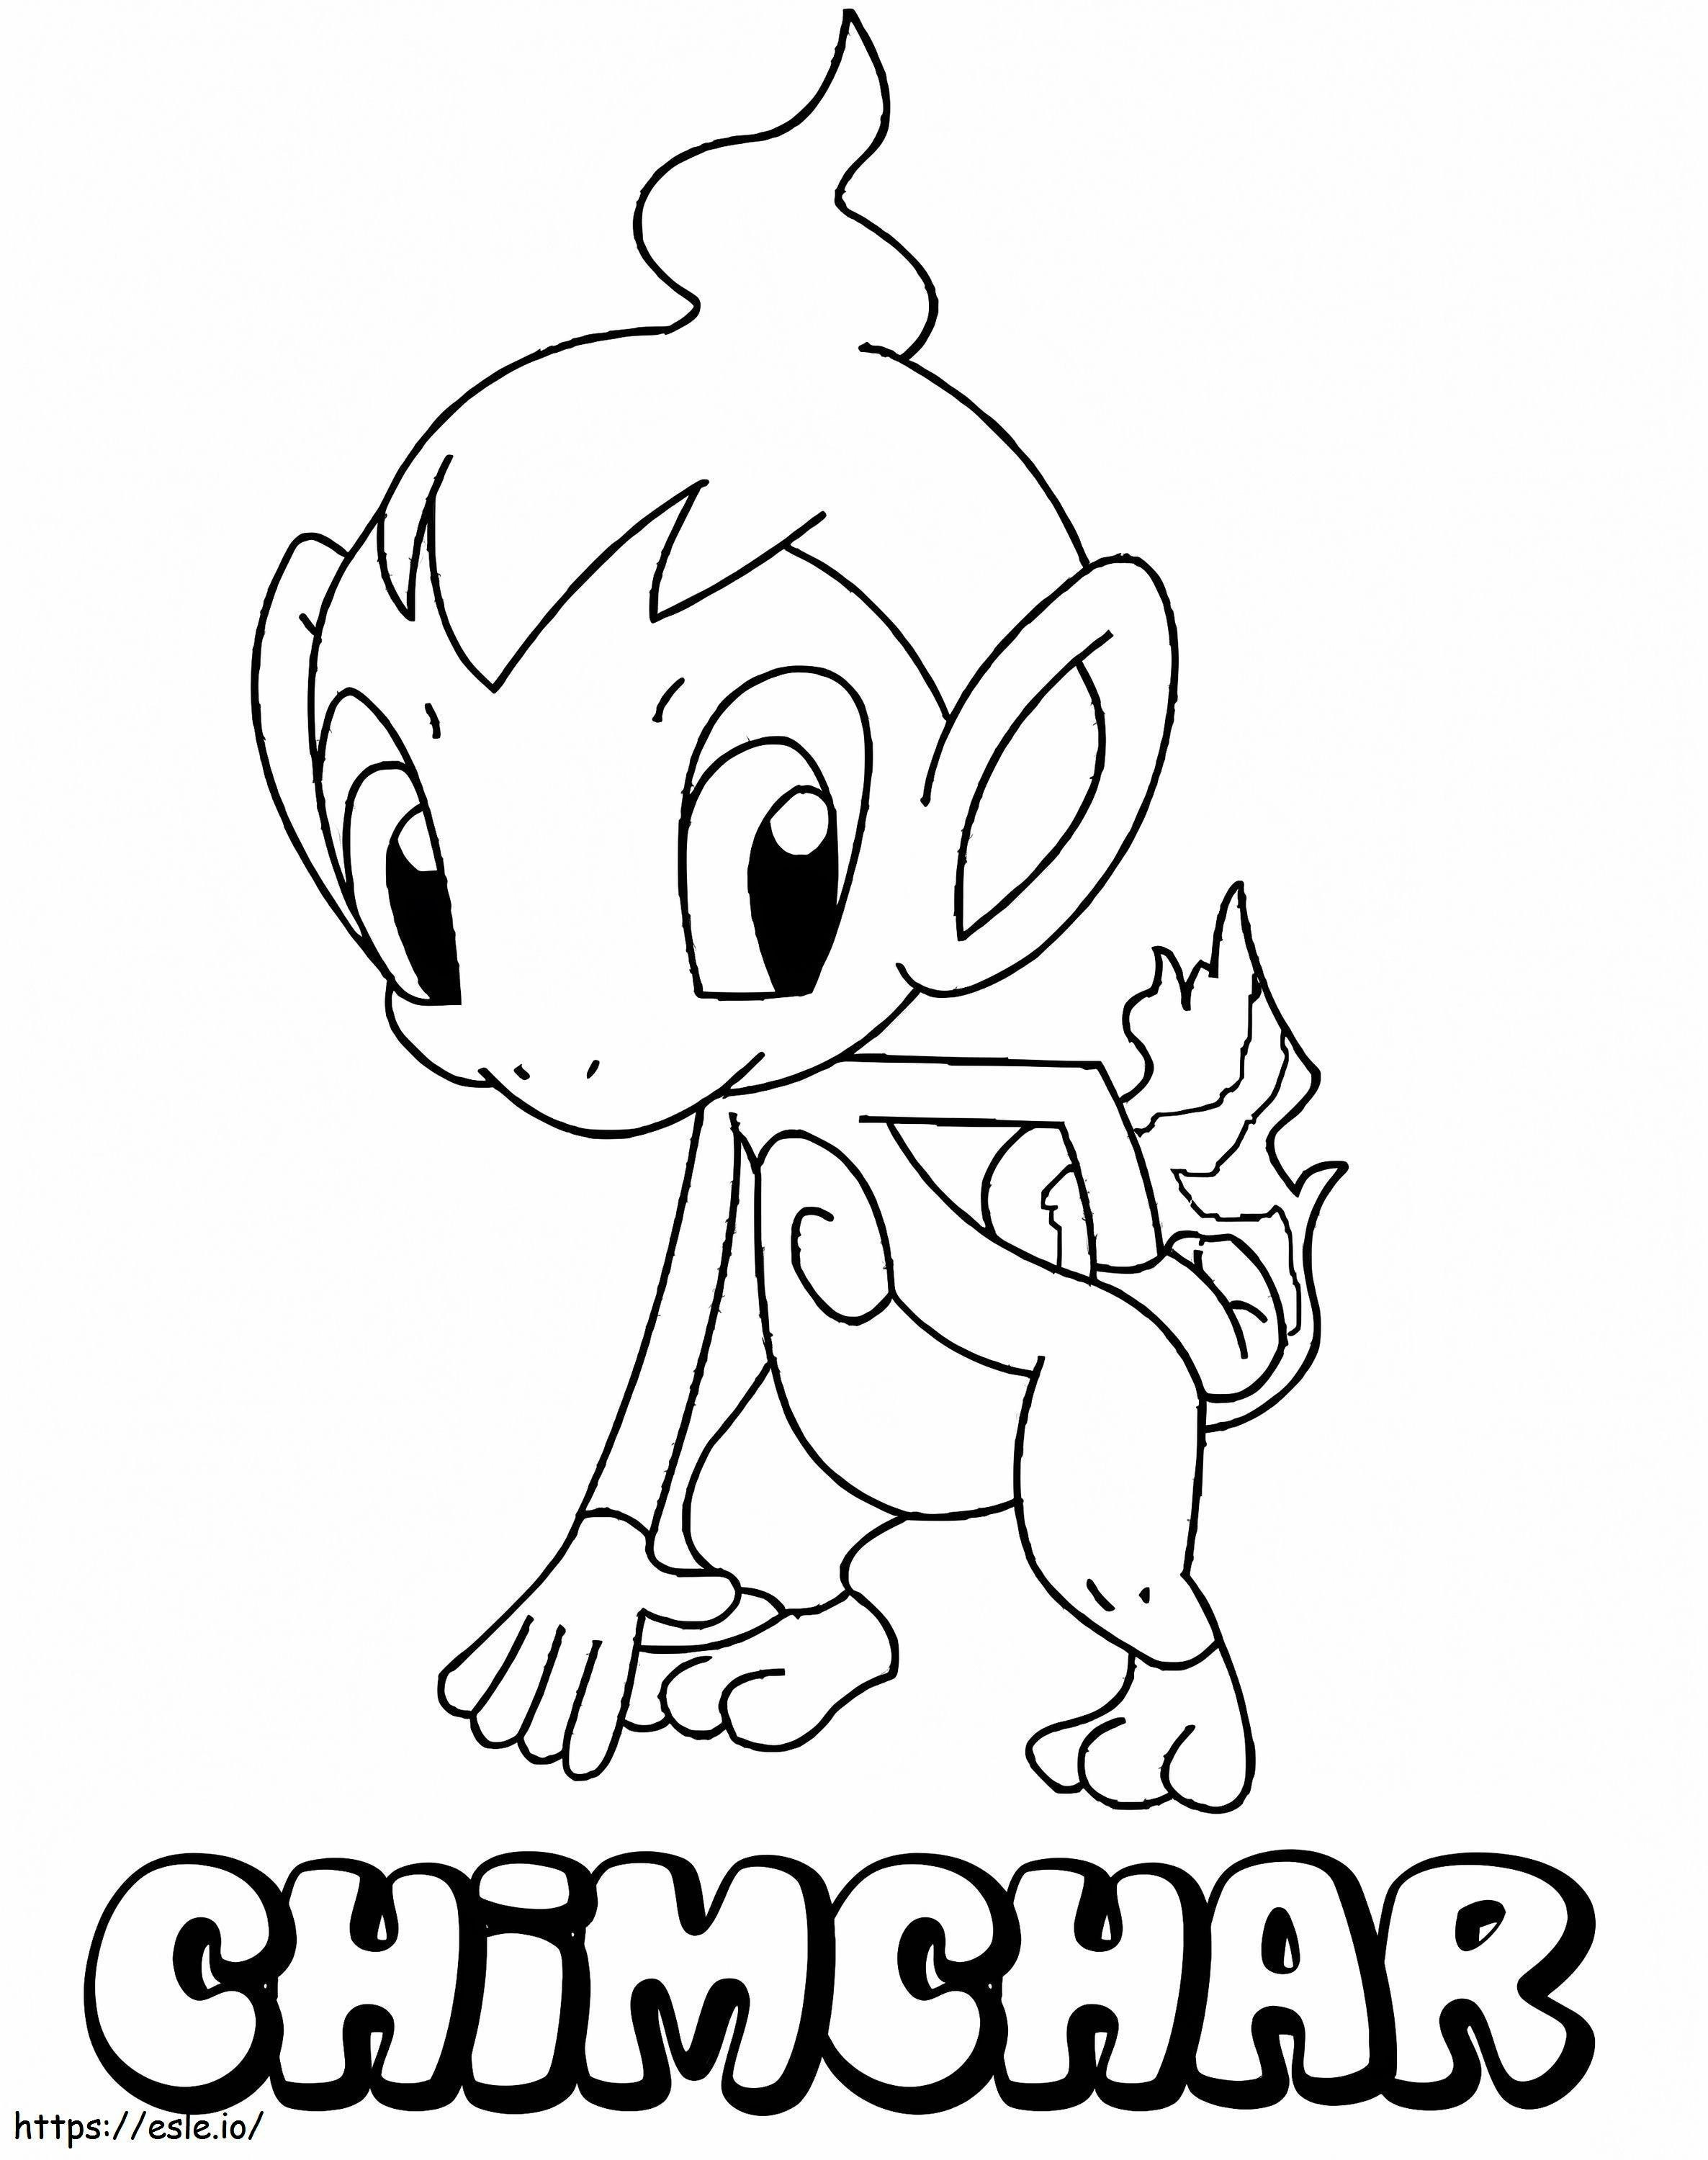 Chimchar-Pokémon ausmalbilder